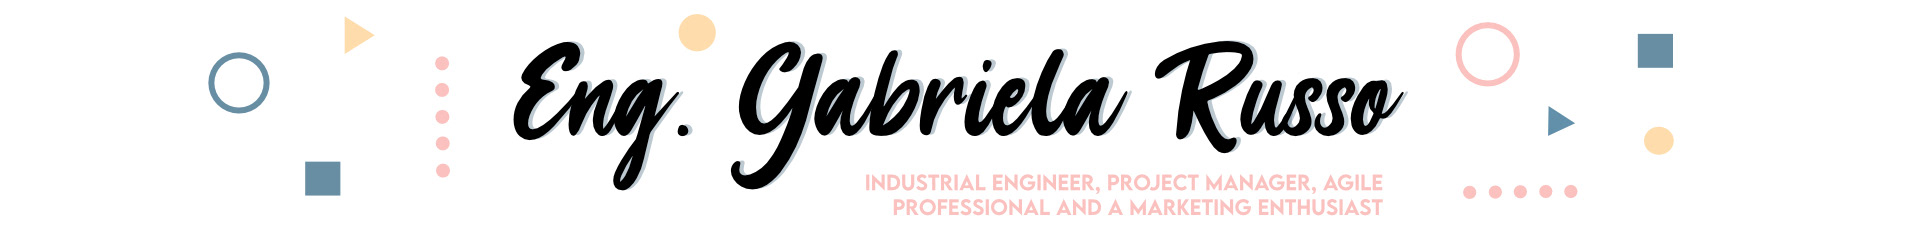 Gabriela Russo's profile banner